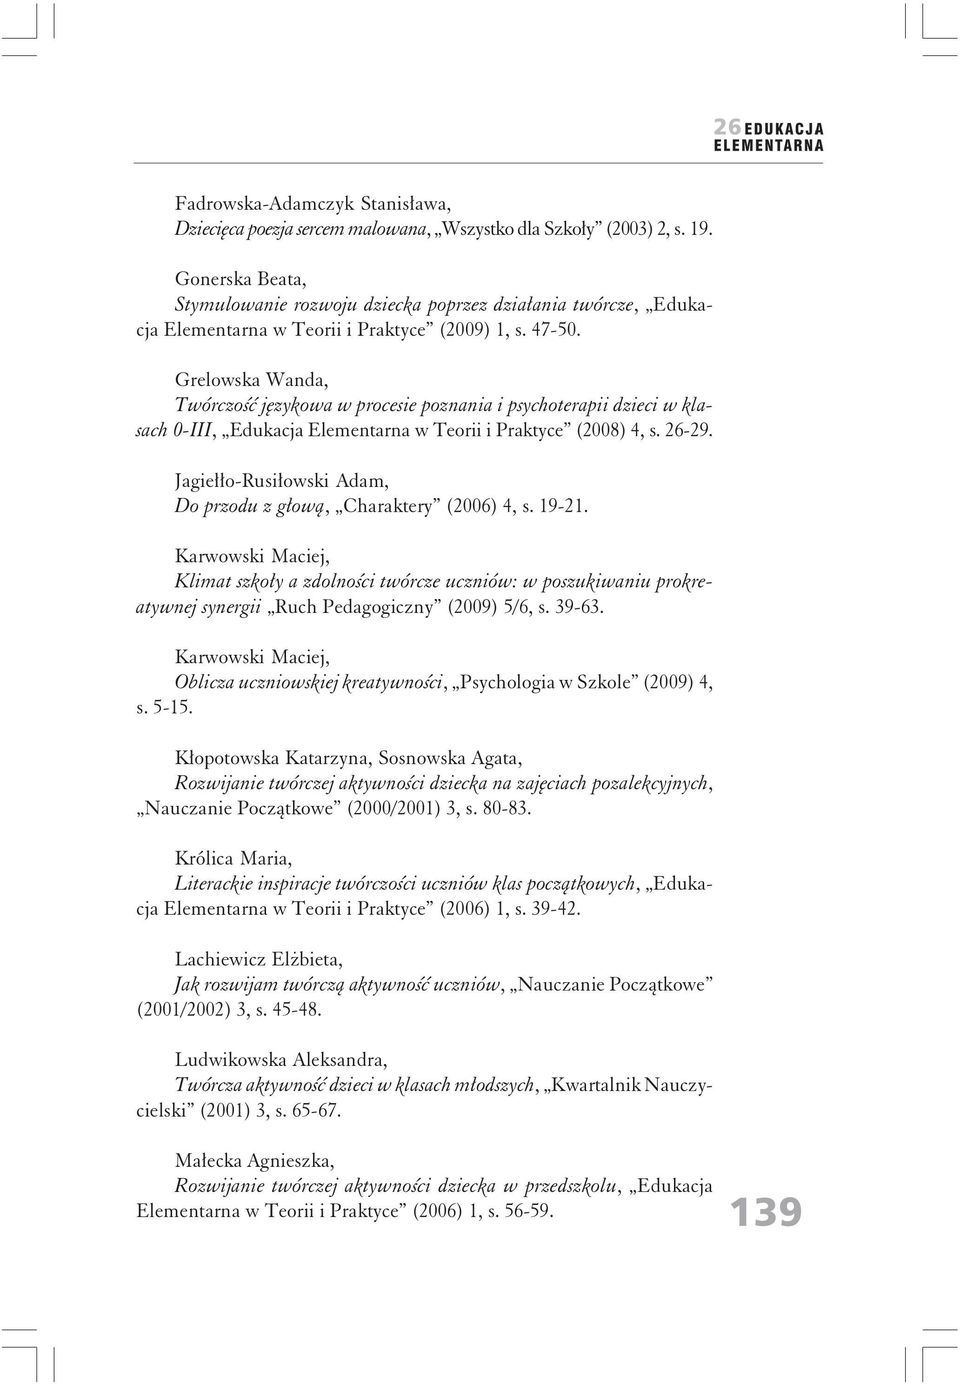 Grelowska Wanda, Twórczość językowa w procesie poznania i psychoterapii dzieci w klasach 0-III, Edukacja Elementarna w Teorii i Praktyce (2008) 4, s. 26-29.